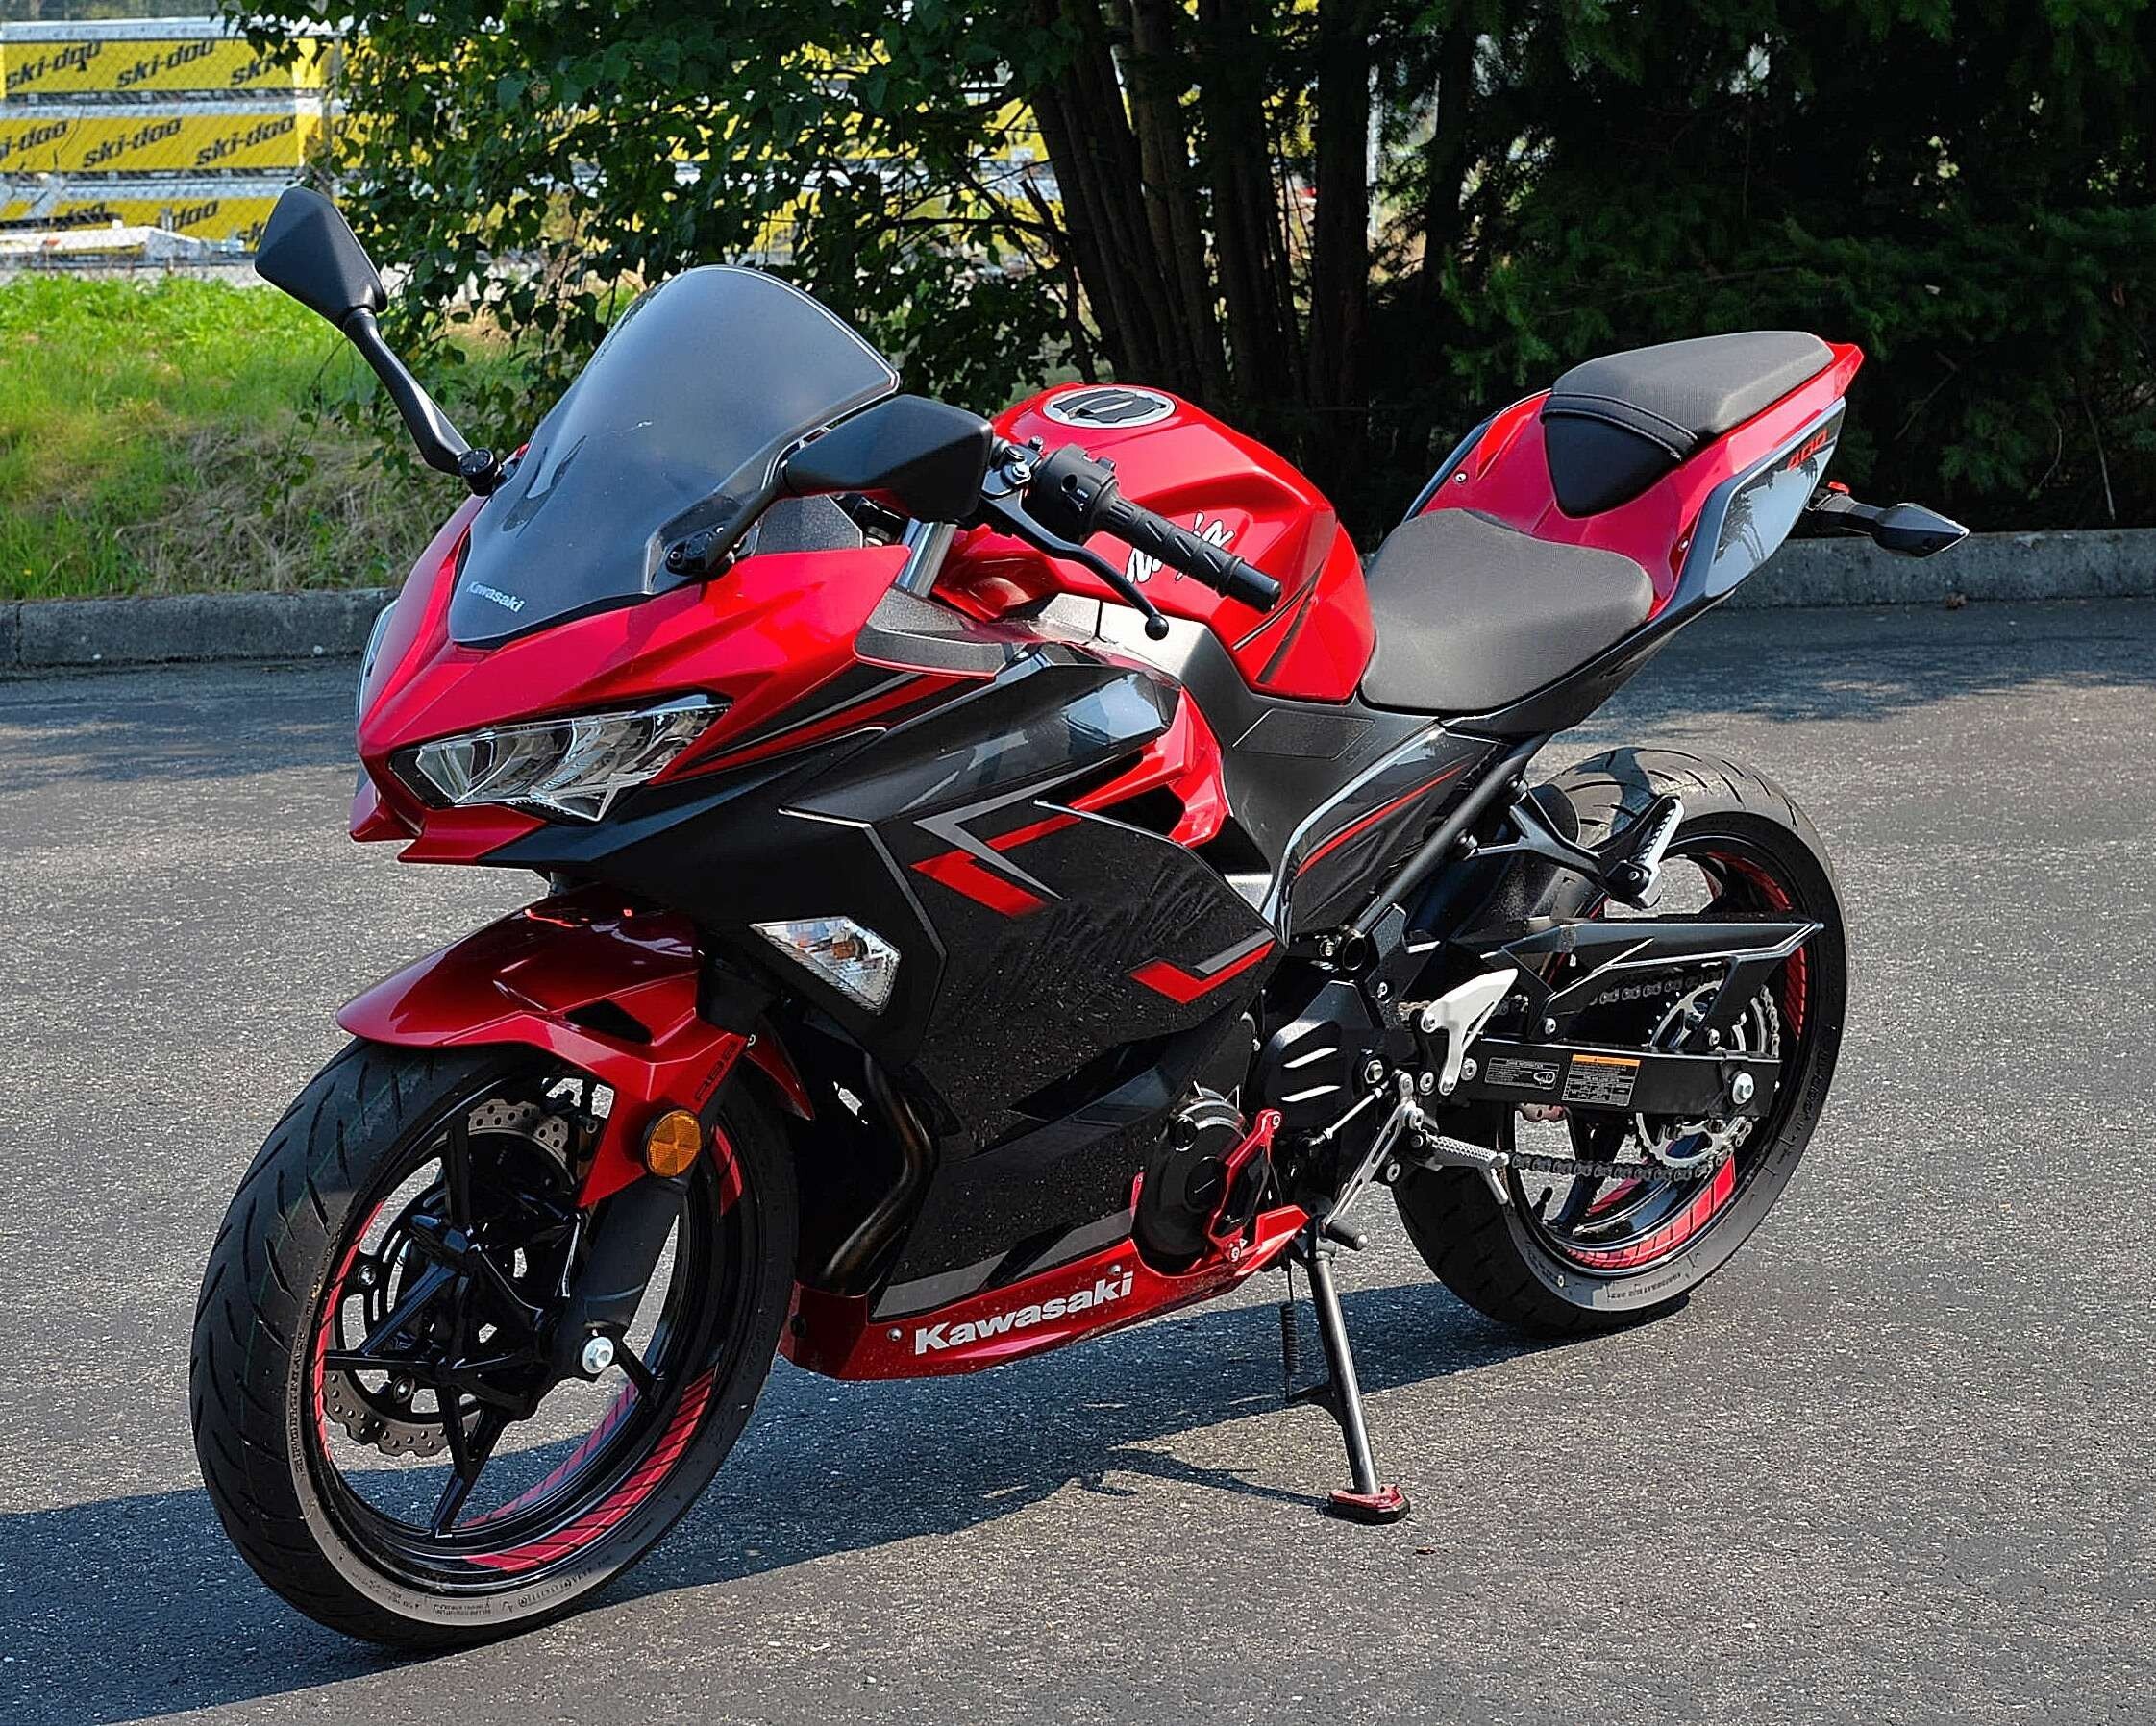 2019 Kawasaki Ninja 400 Motorcycles for Sale - Motorcycles on Autotrader